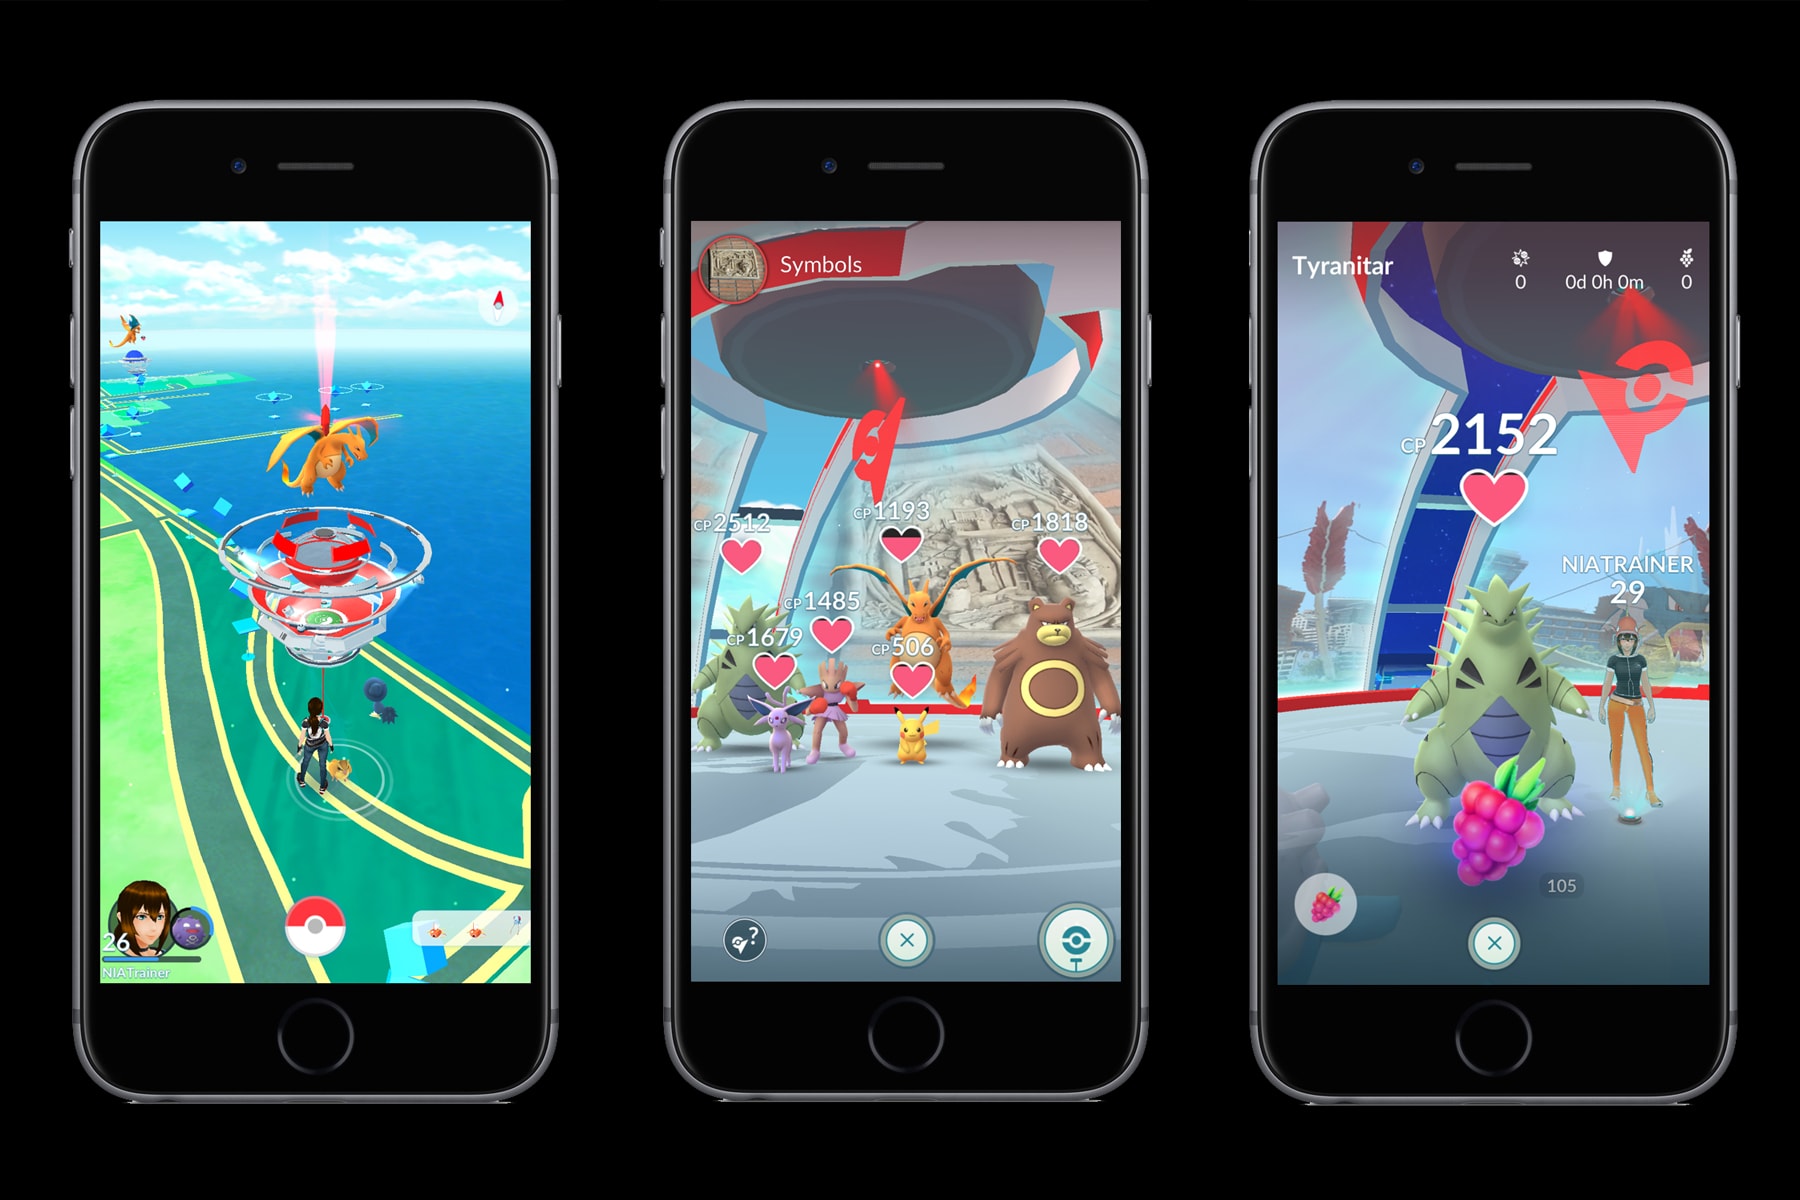 對戰啟動 -《Pokémon GO》迎來推出至今最大型更新